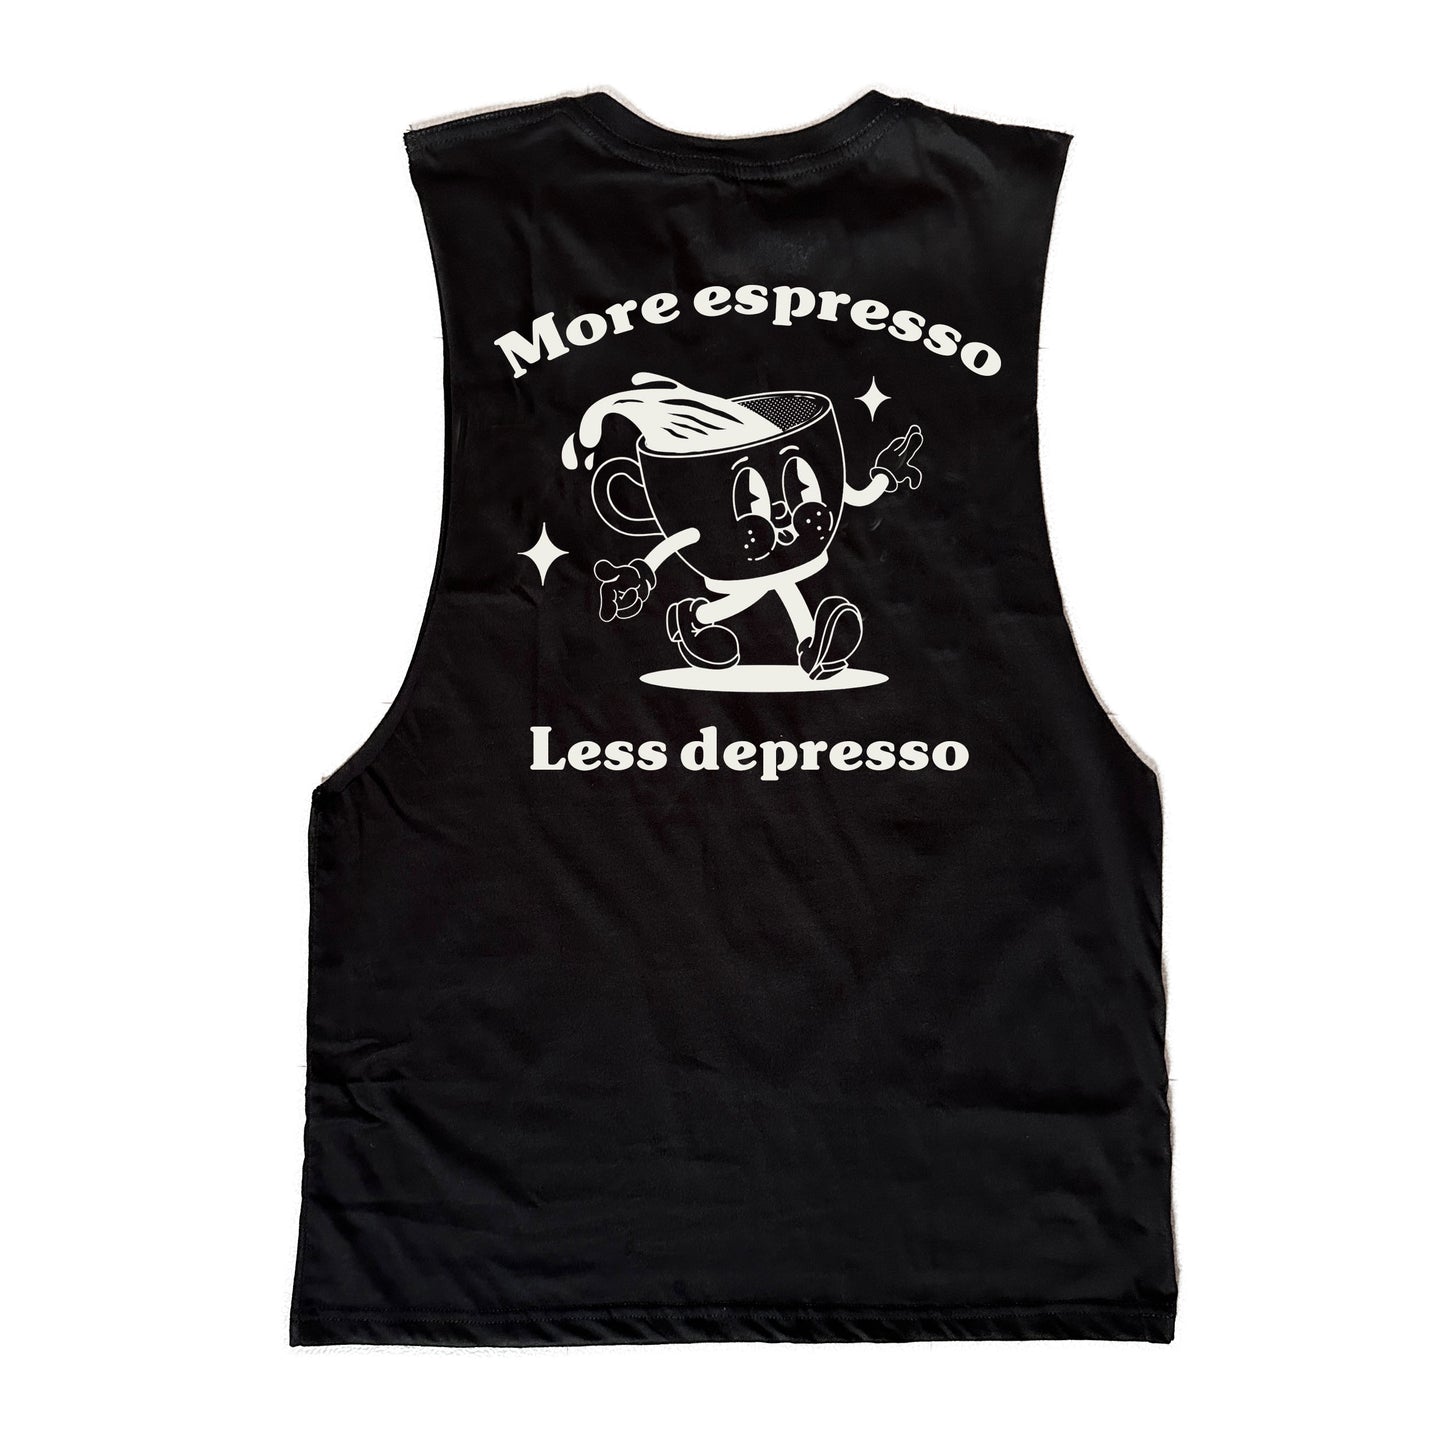 More espresso less depresso muscle tank